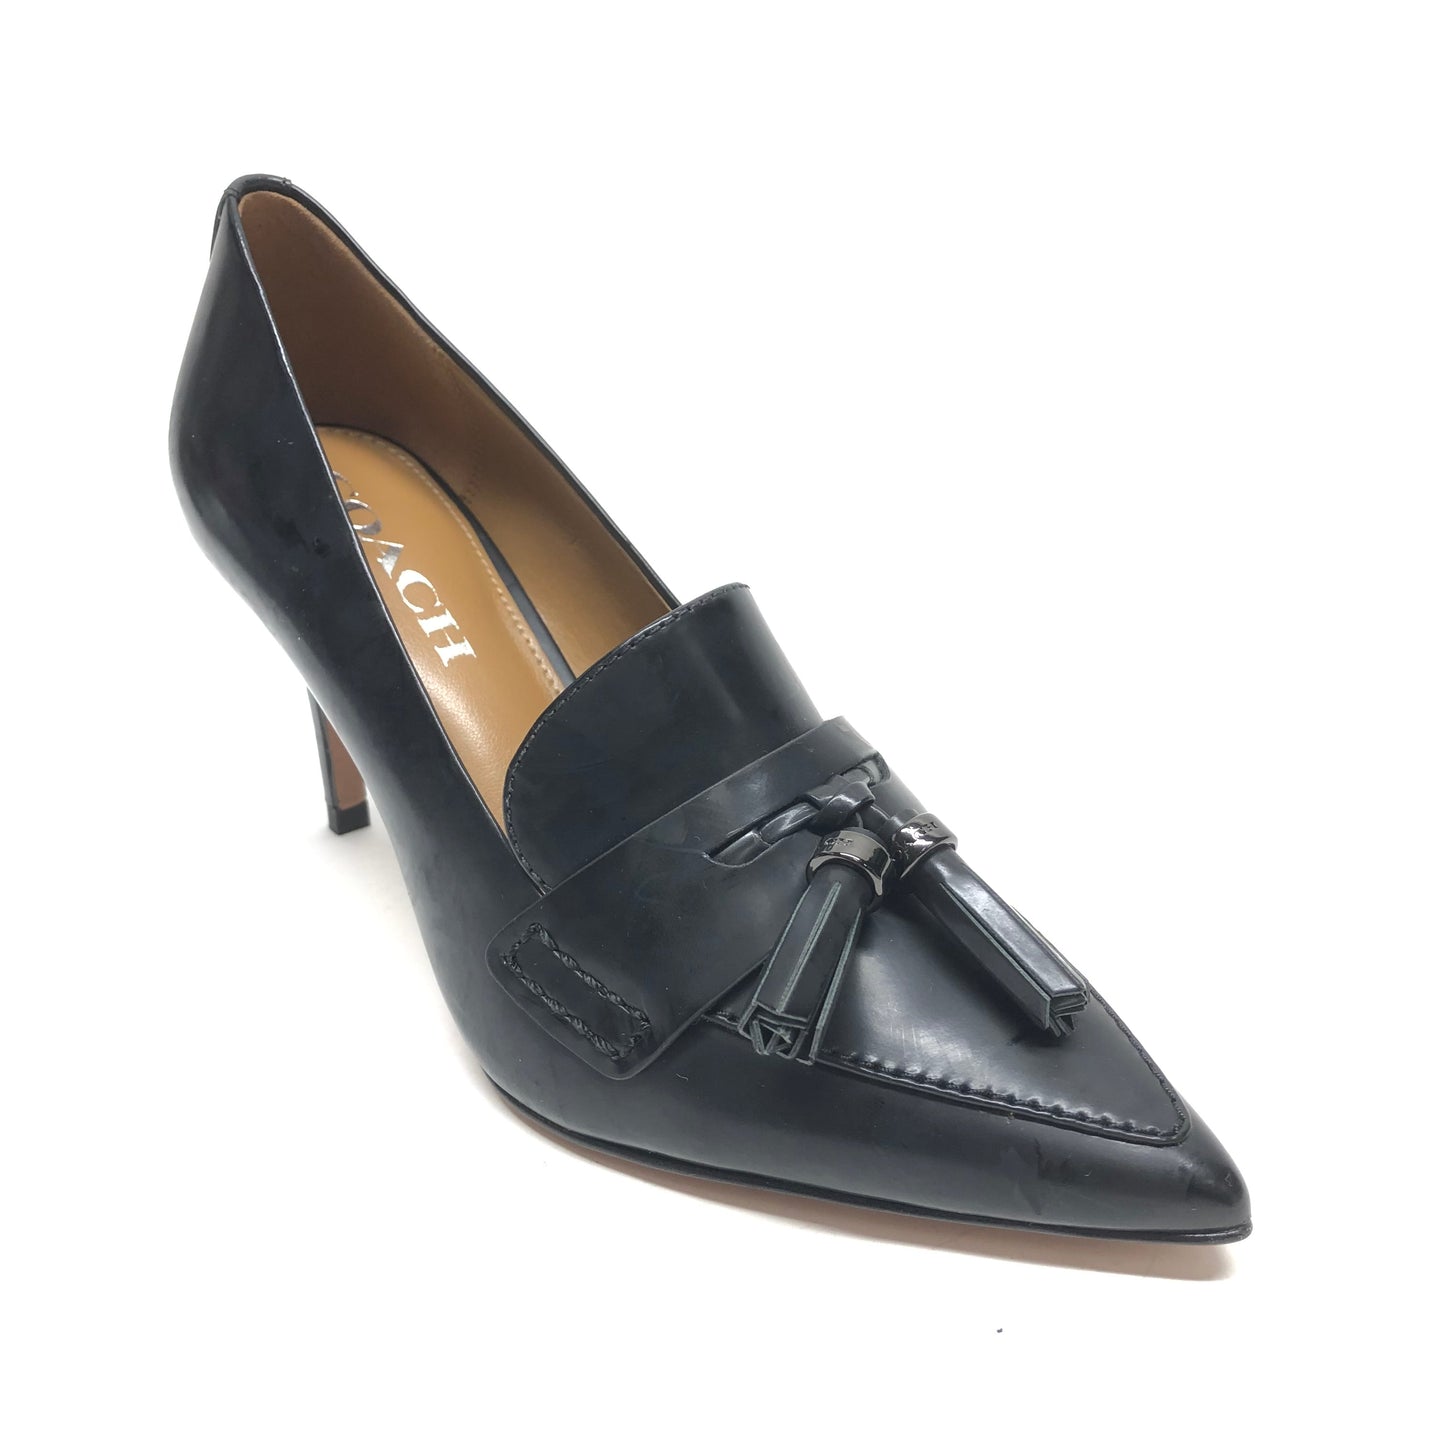 Black Shoes Heels Stiletto Coach, Size 6